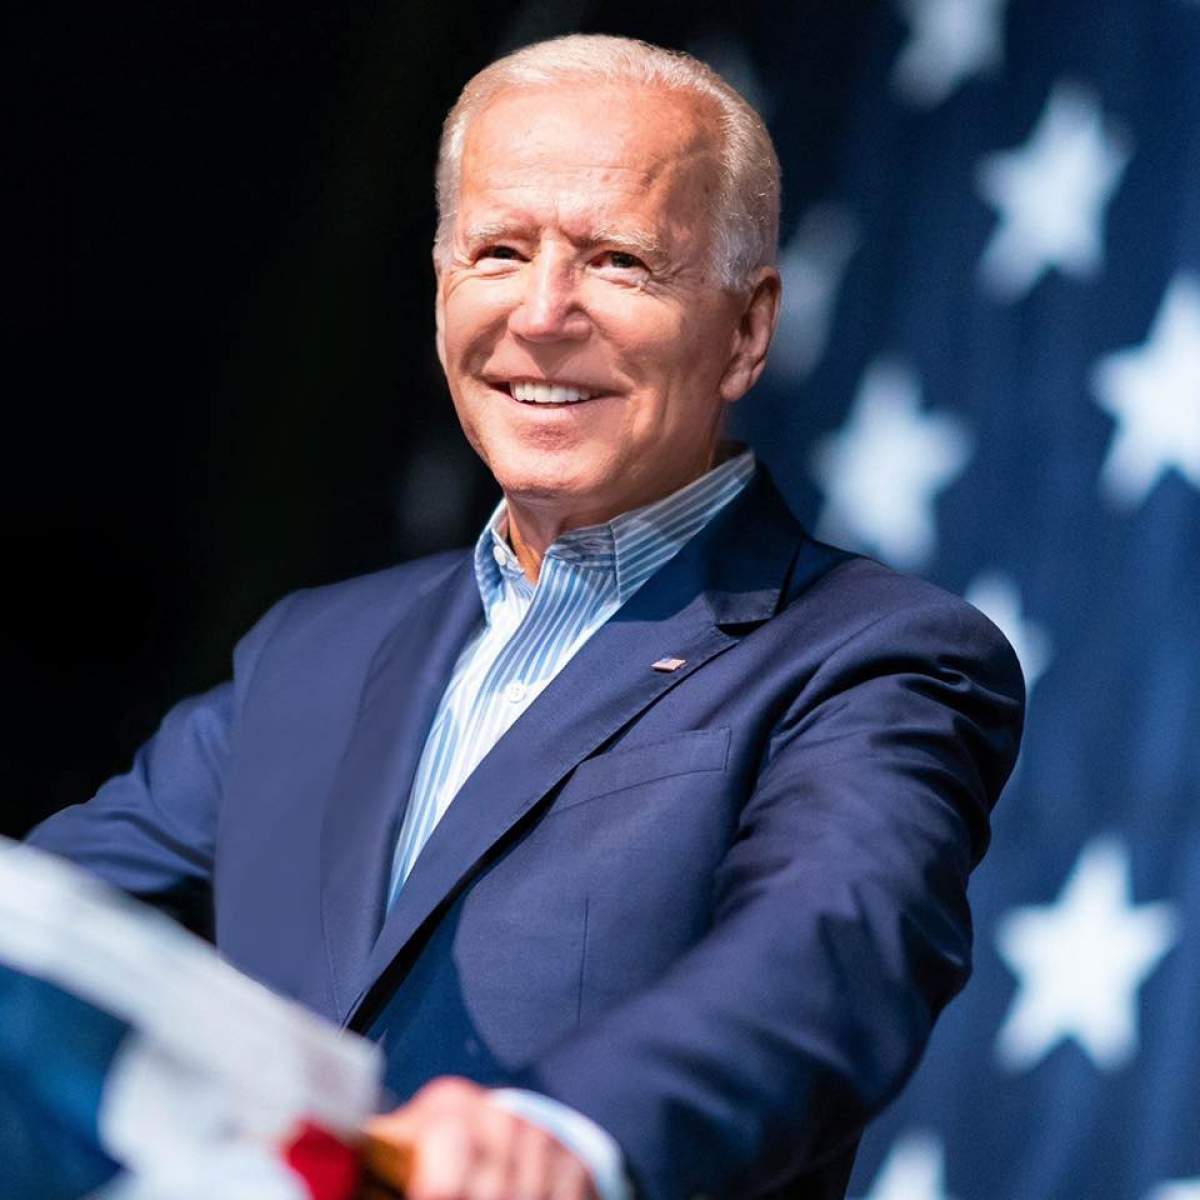 Joe Biden, acuzat de hărțuire sexuală de o fostă asistentă! Cum se apără candidatul la Președinția SUA: "Femeile merită tratate cu respect"